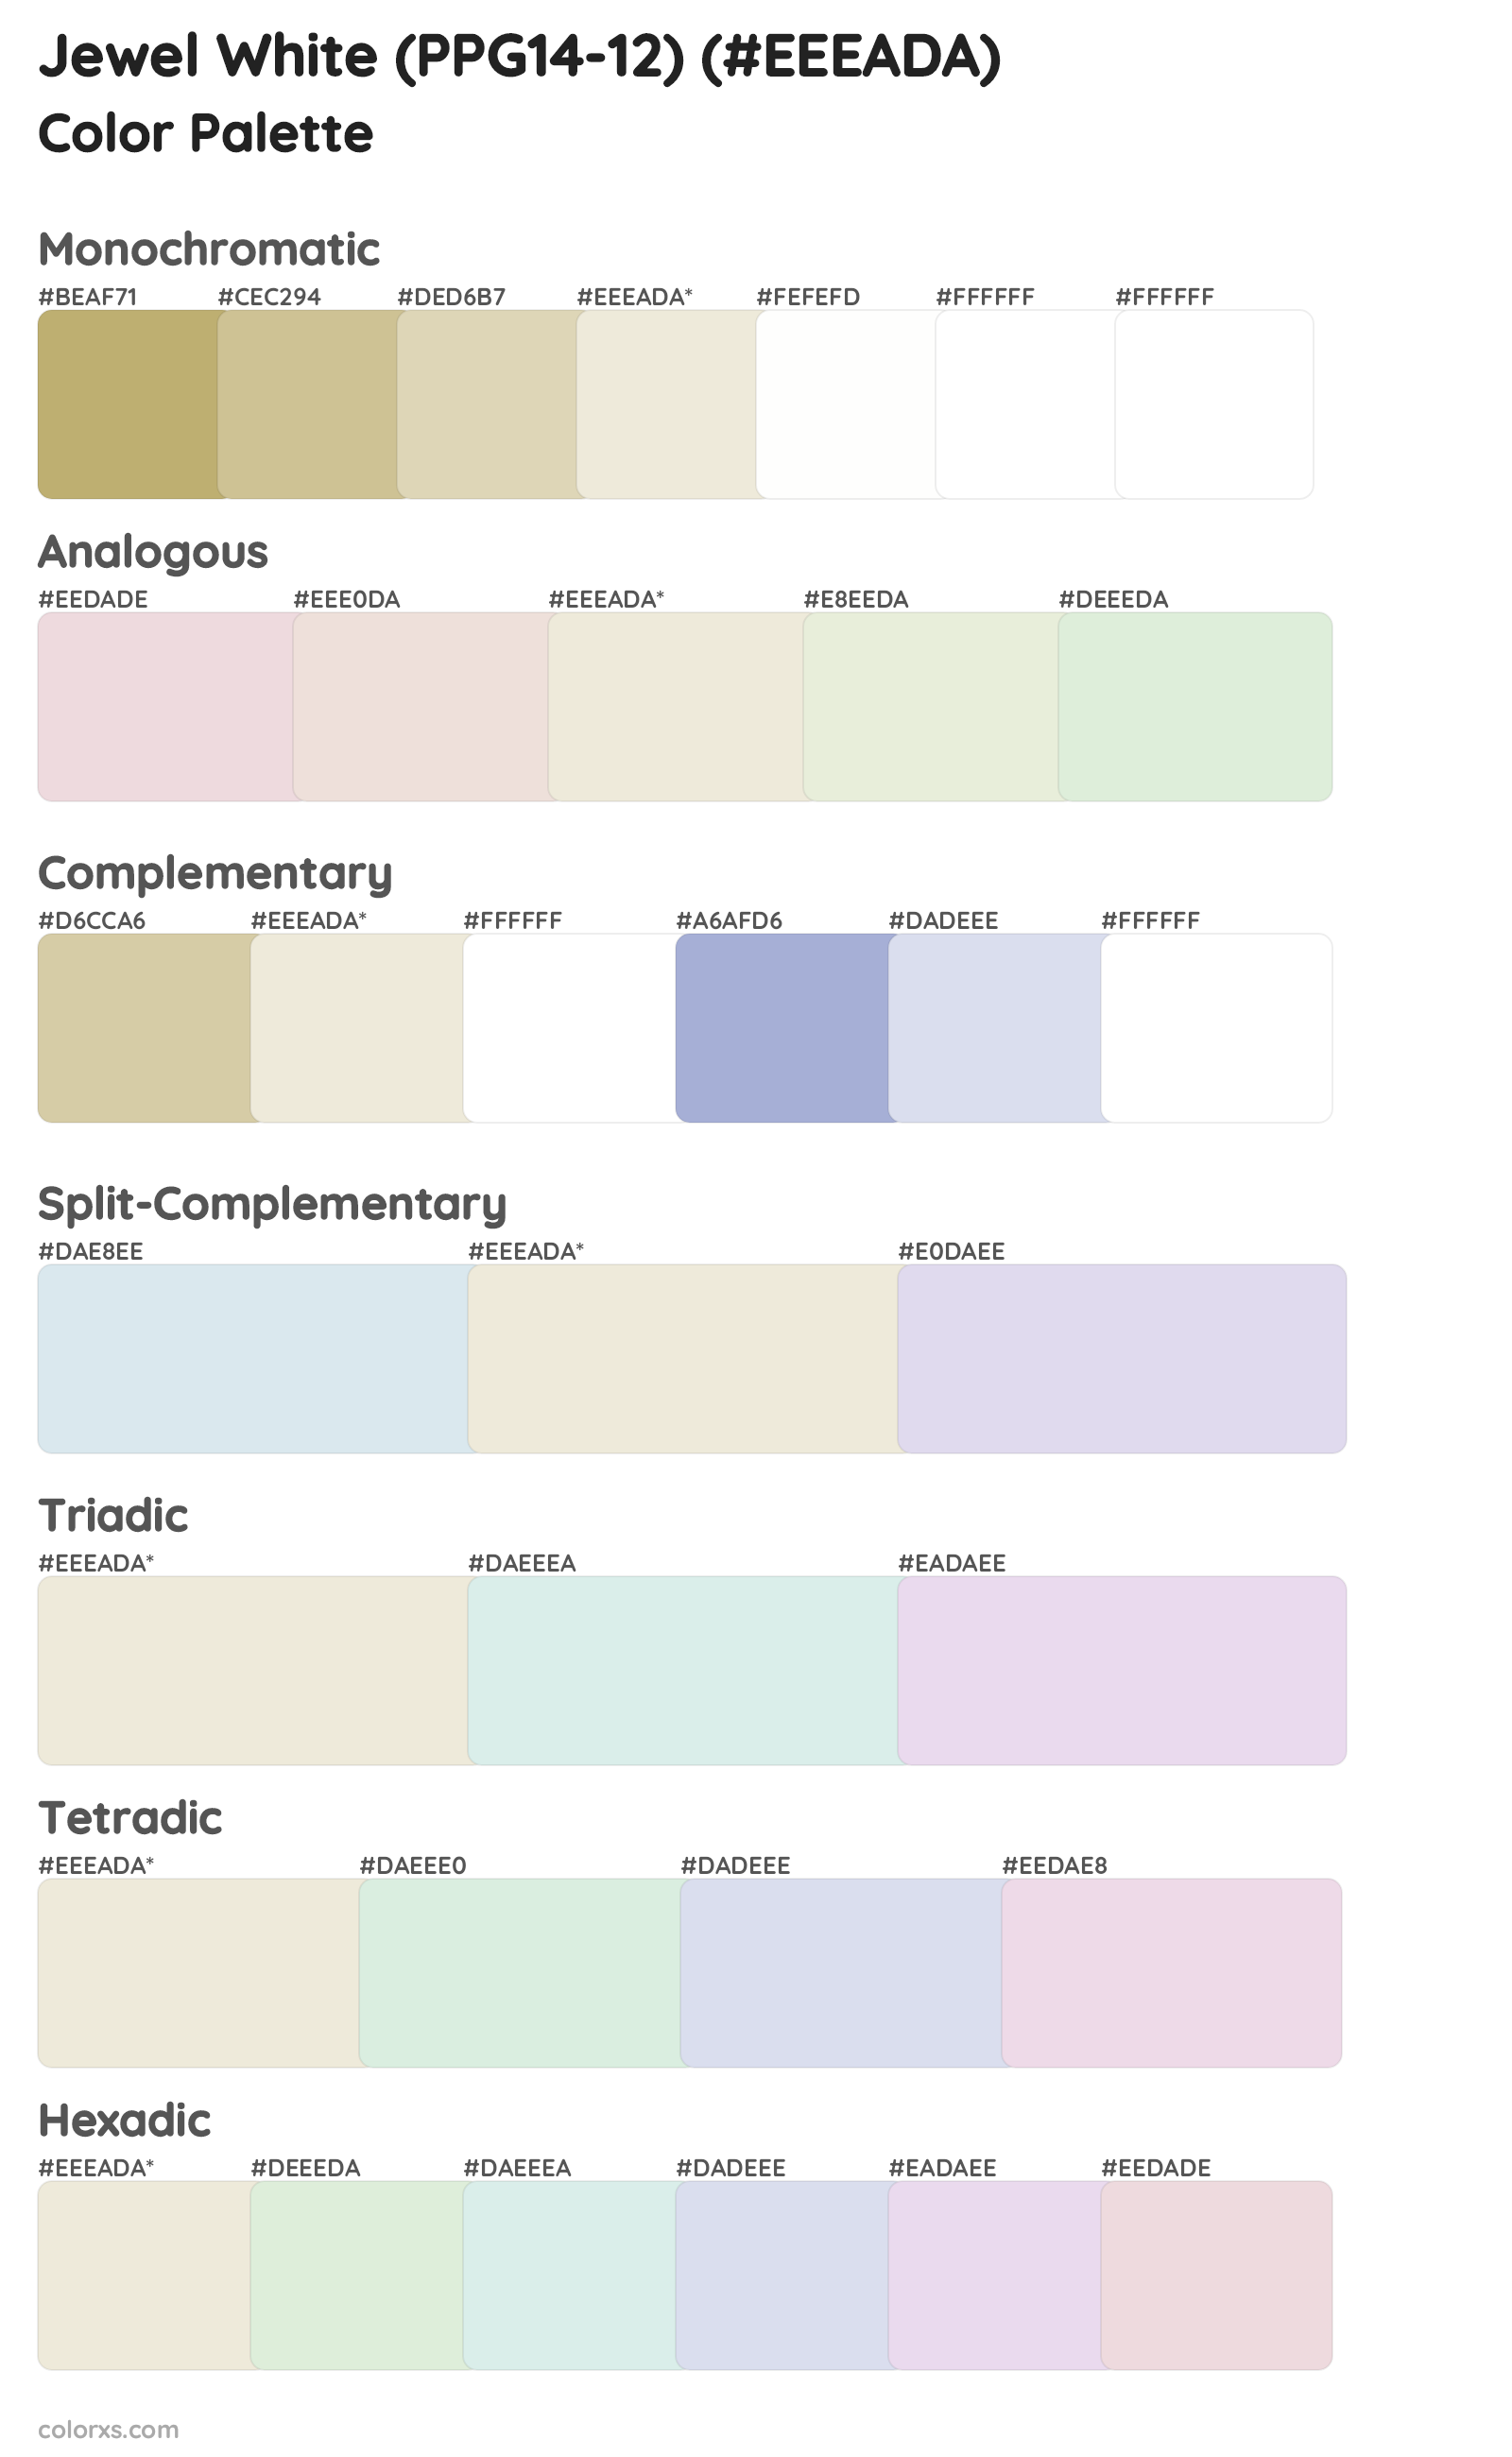 Jewel White (PPG14-12) Color Scheme Palettes